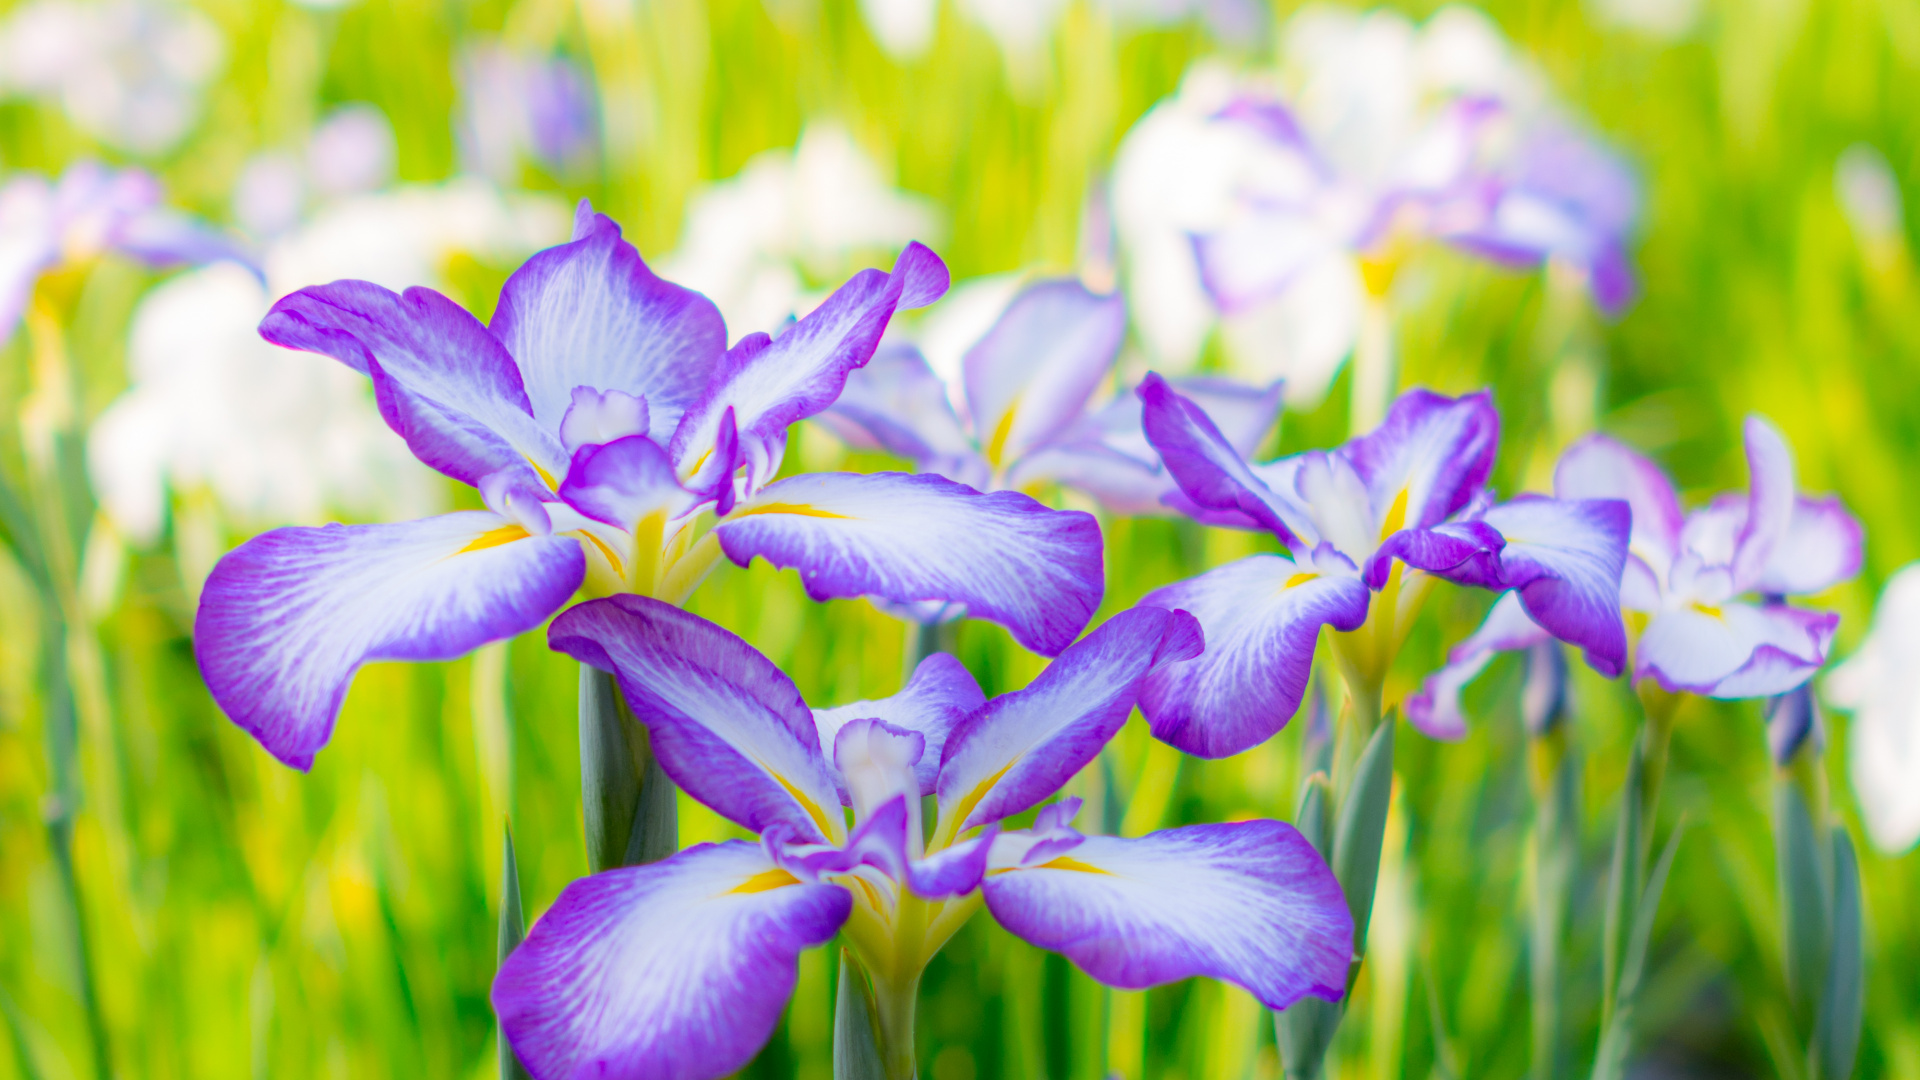 Purple and White Flowers in Tilt Shift Lens. Wallpaper in 1920x1080 Resolution